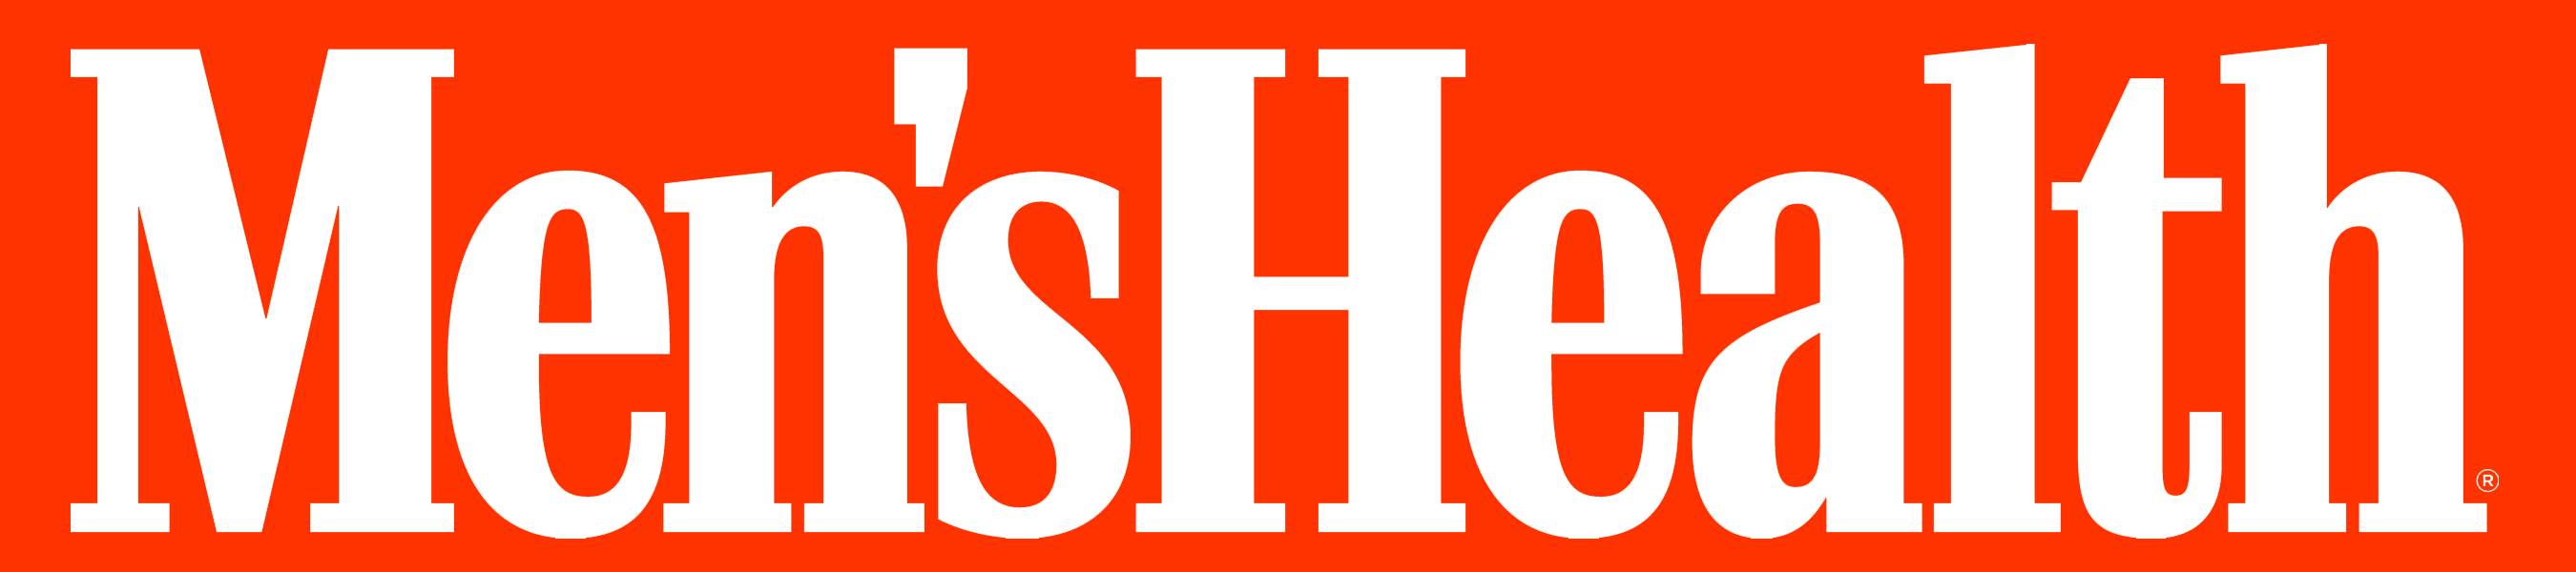 Mens_Health_logo_orange_bg 